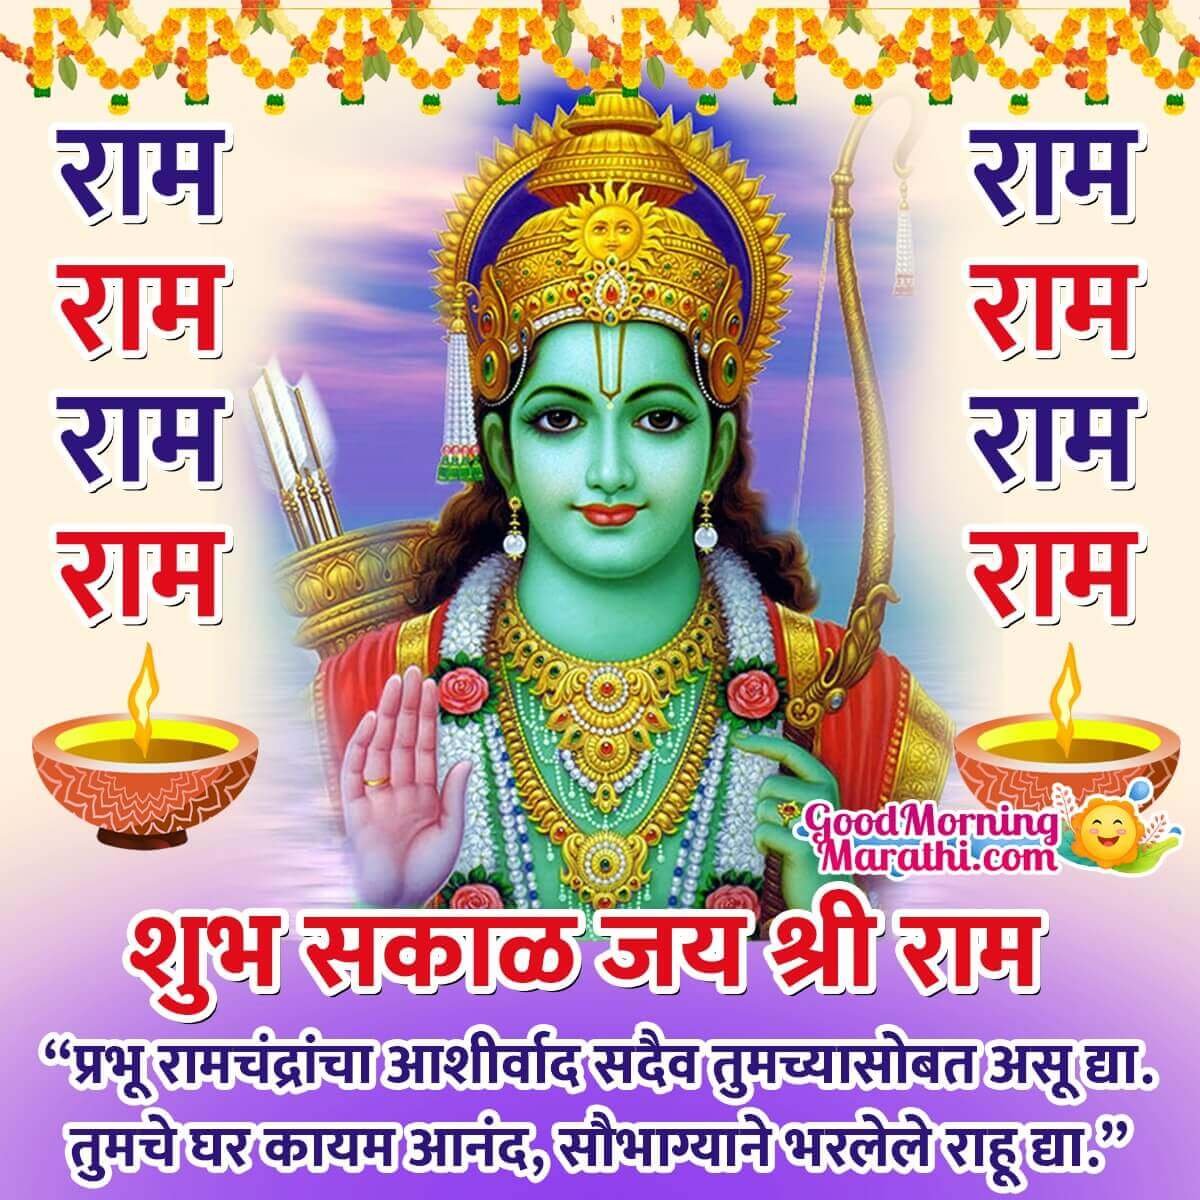 Good Morning Shri Ram Marathi Images